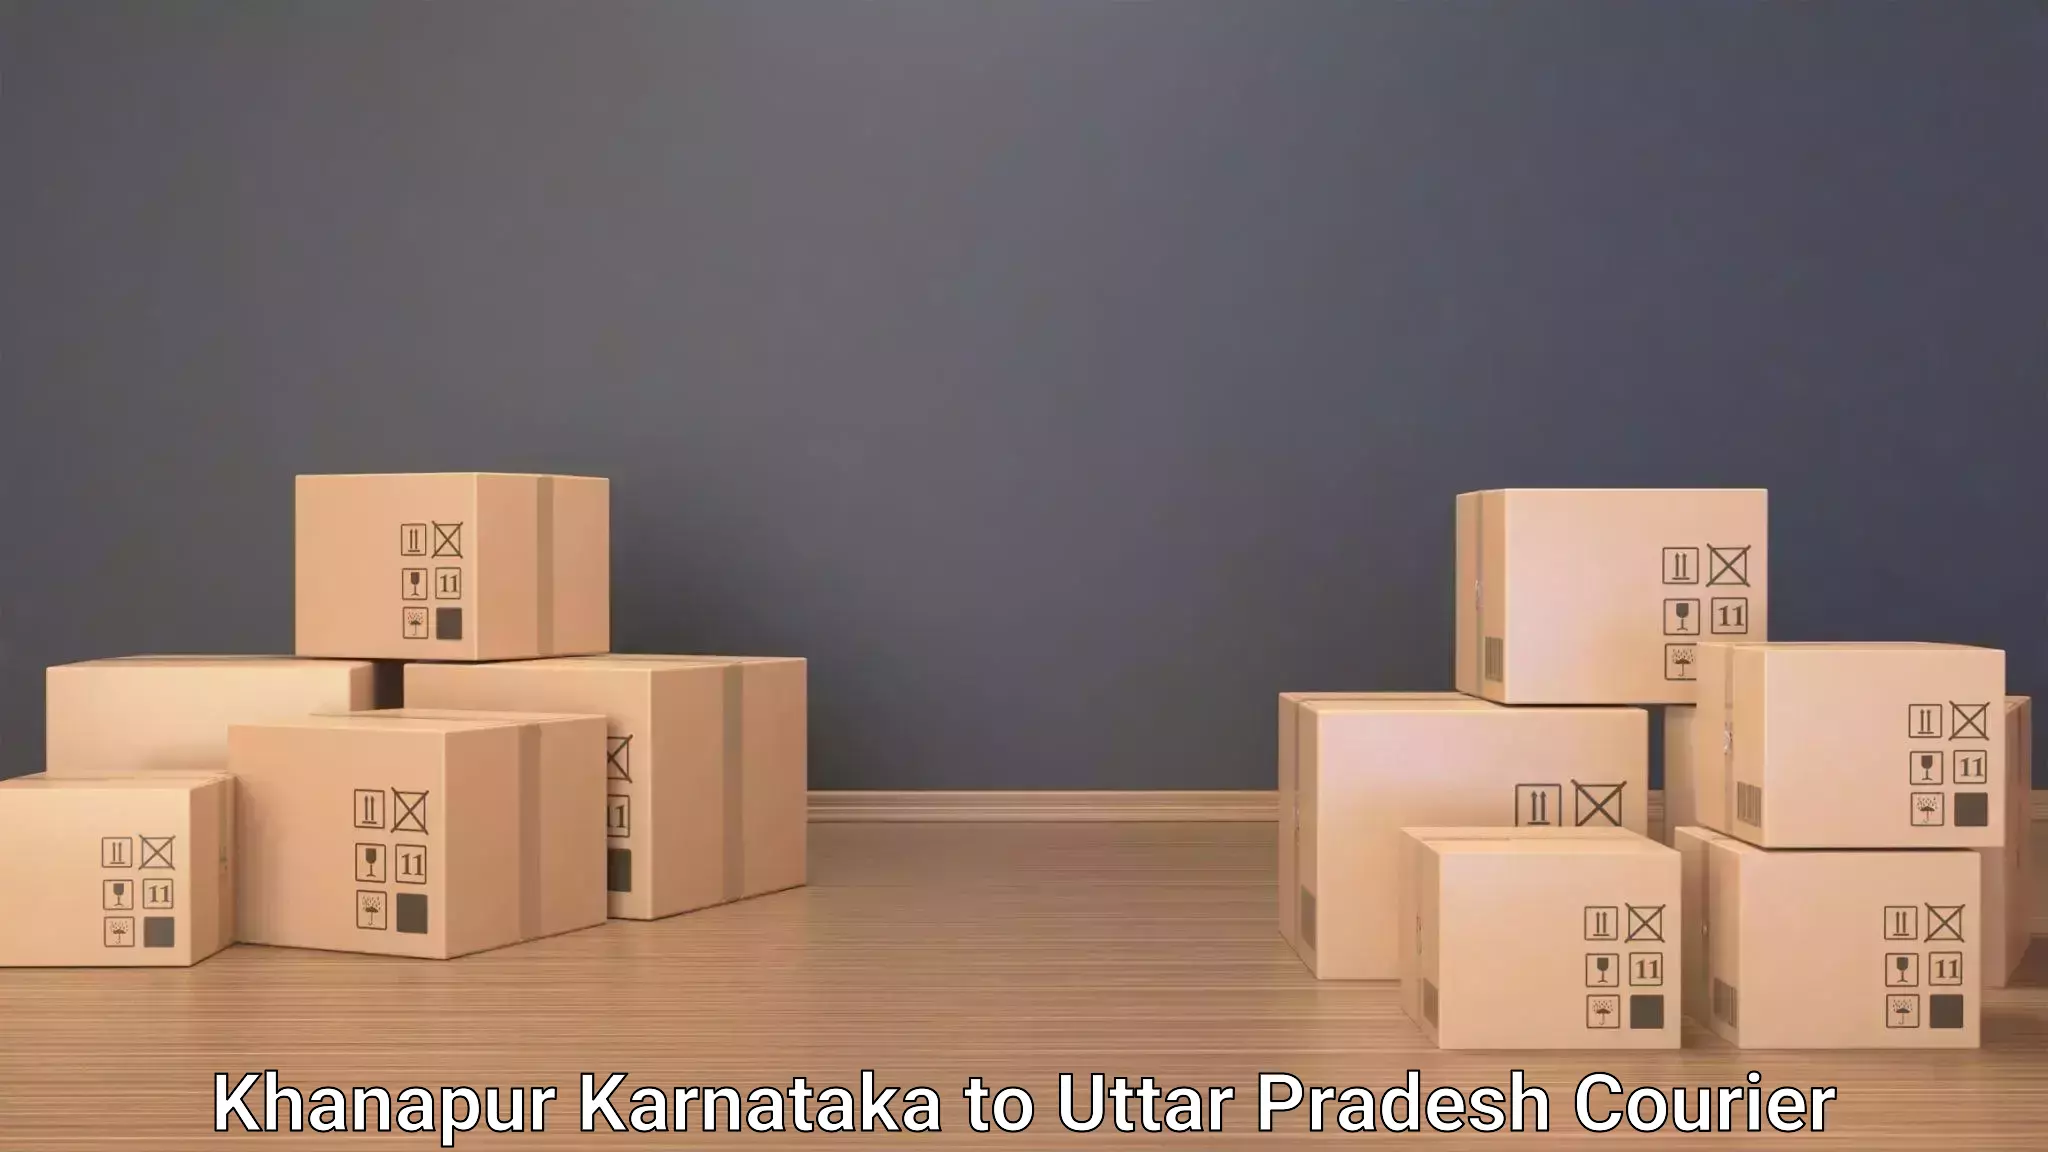 Baggage courier logistics Khanapur Karnataka to Cholapur